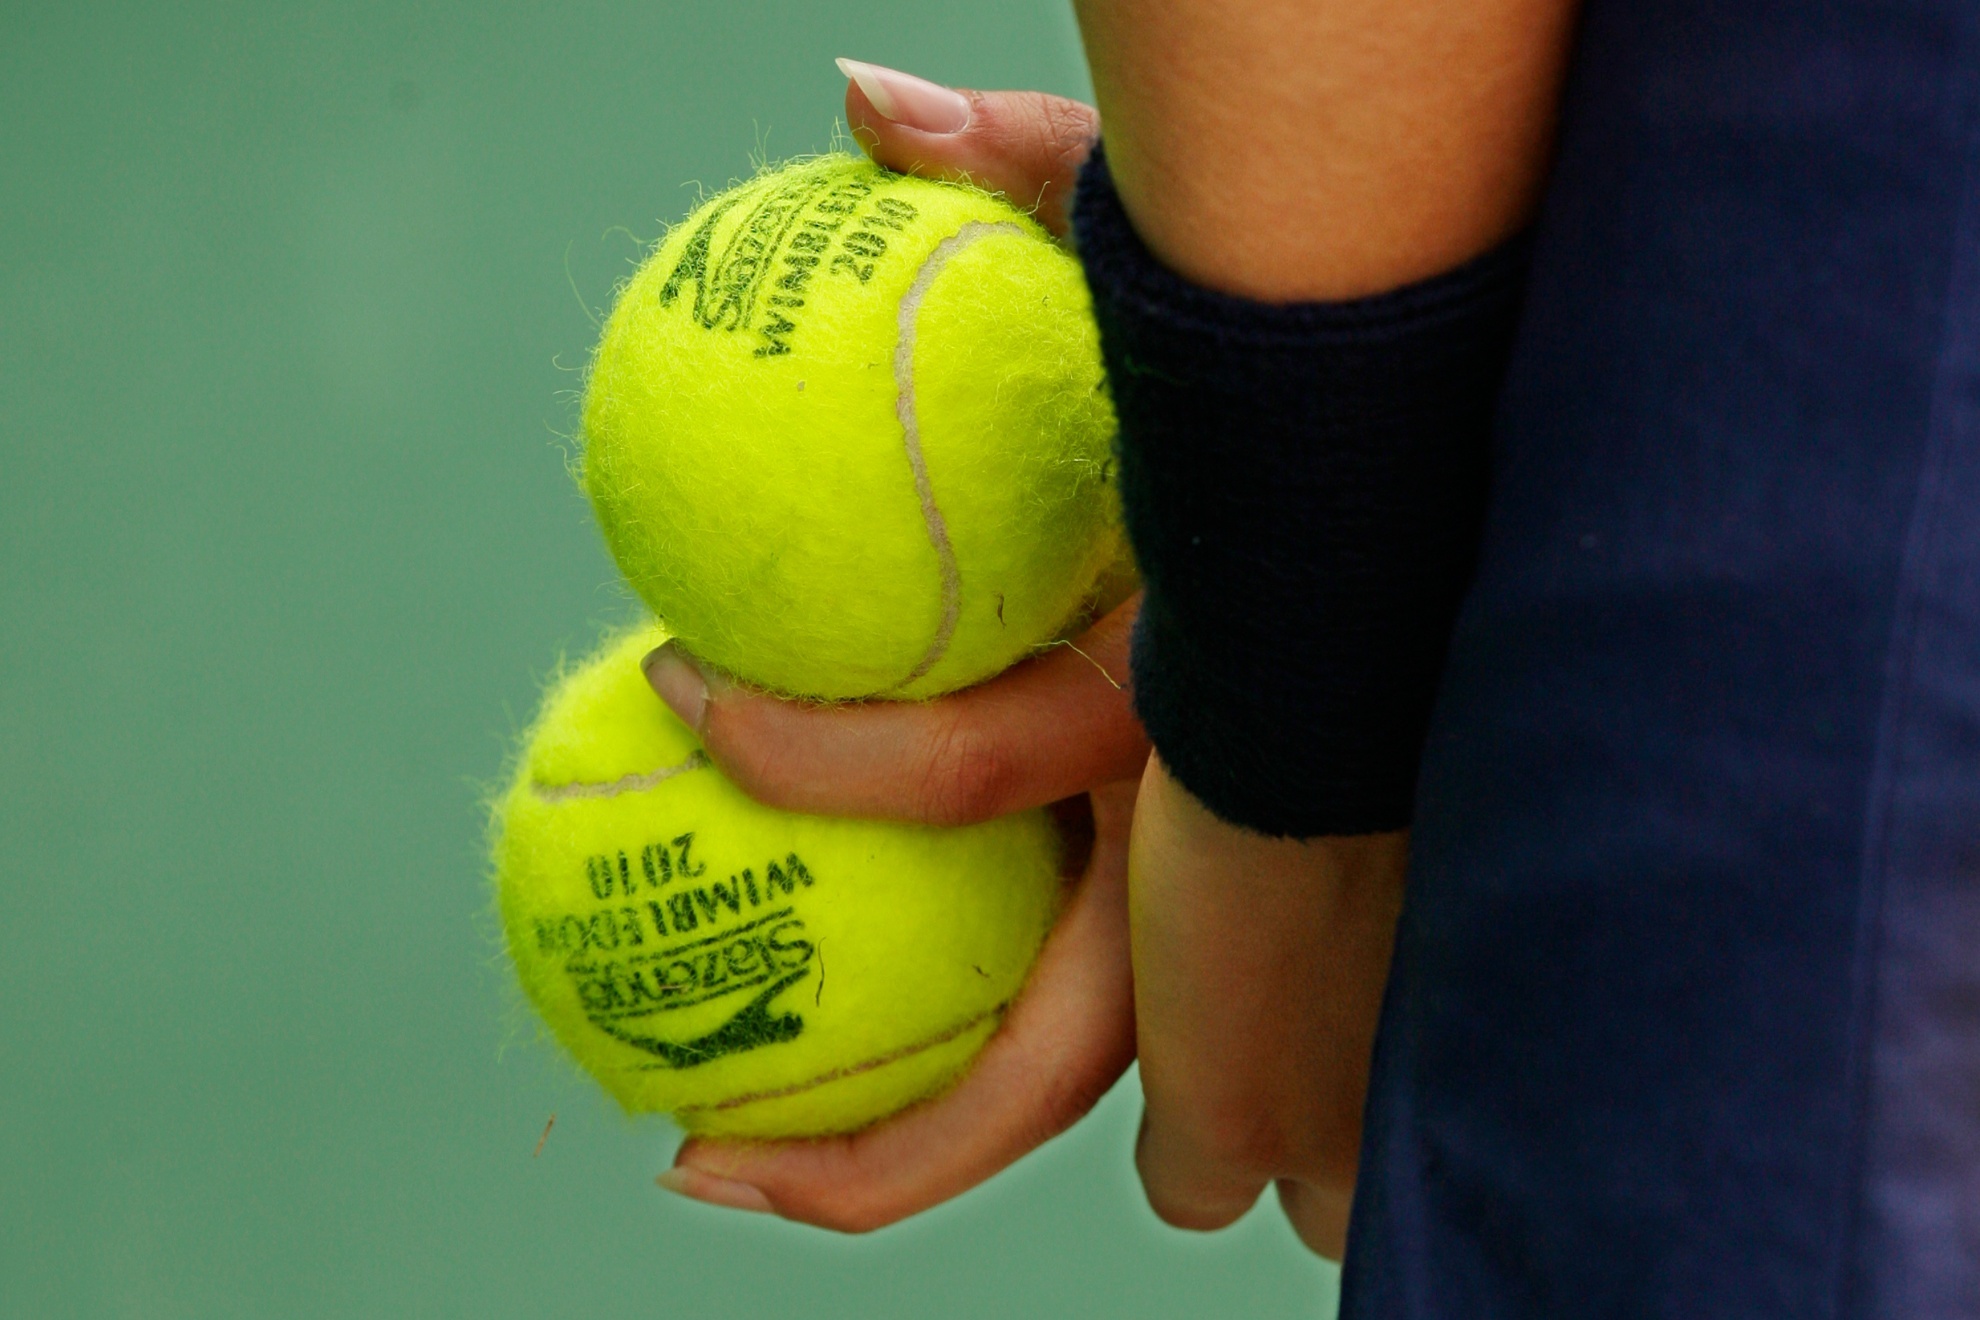 Wimbledon tennis balls.